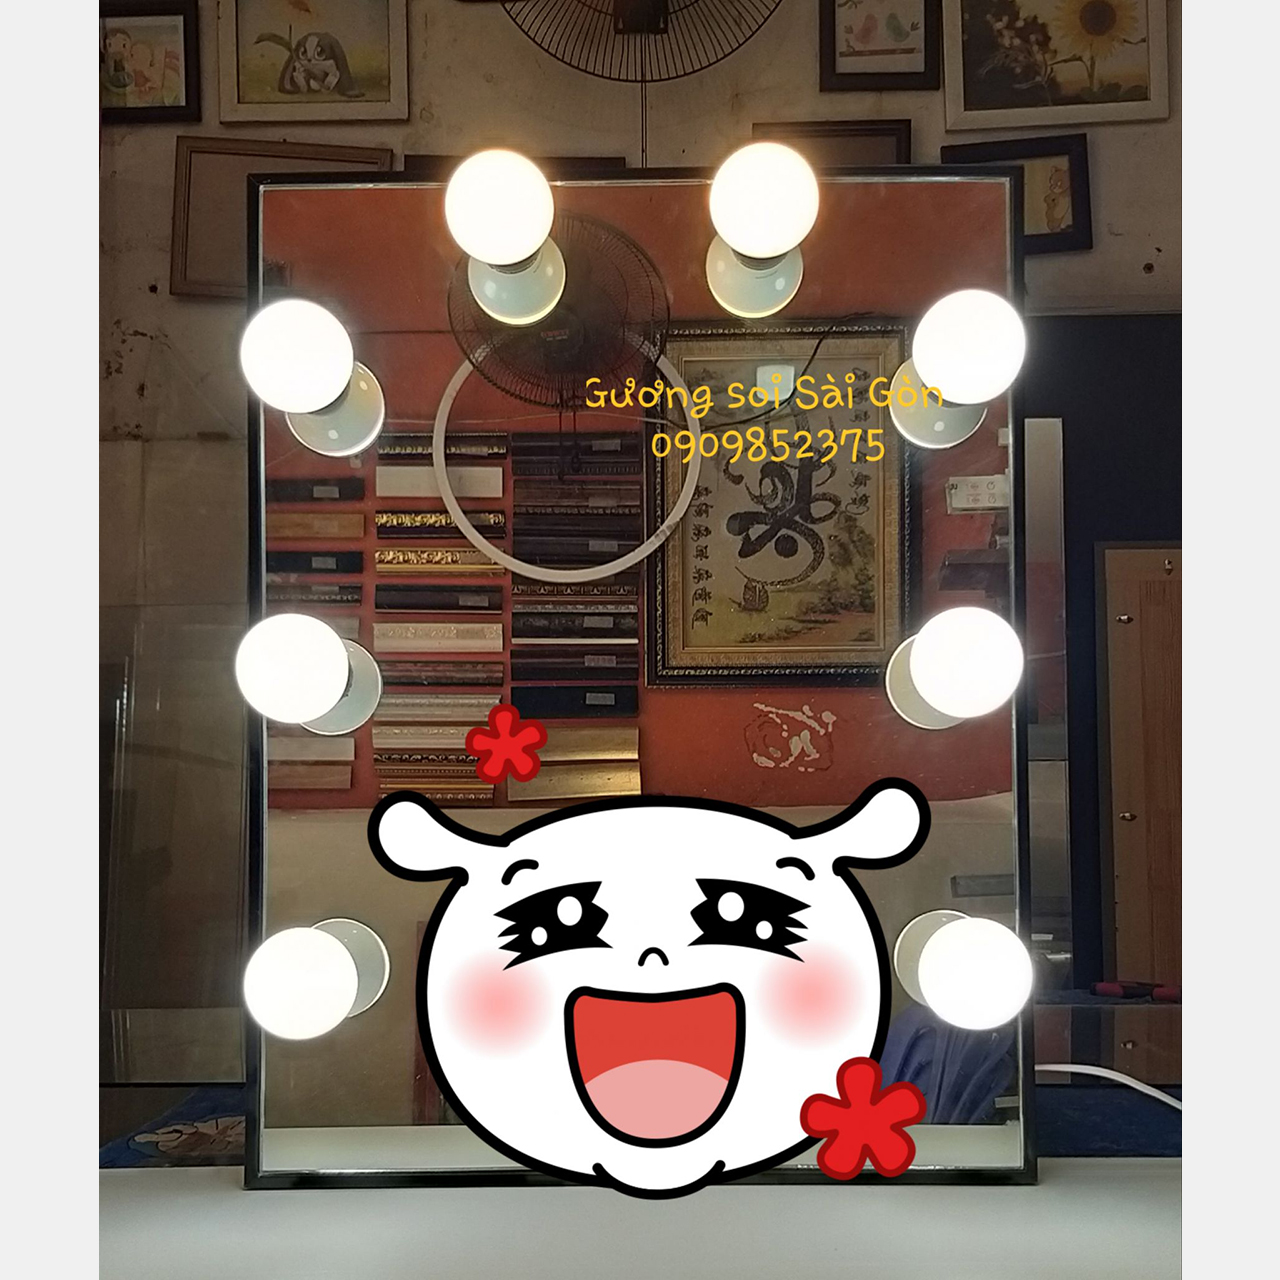 Gương trang điểm gắn đèn led cao cấp 40 x 60 cm ( Đài Loan màu đen )